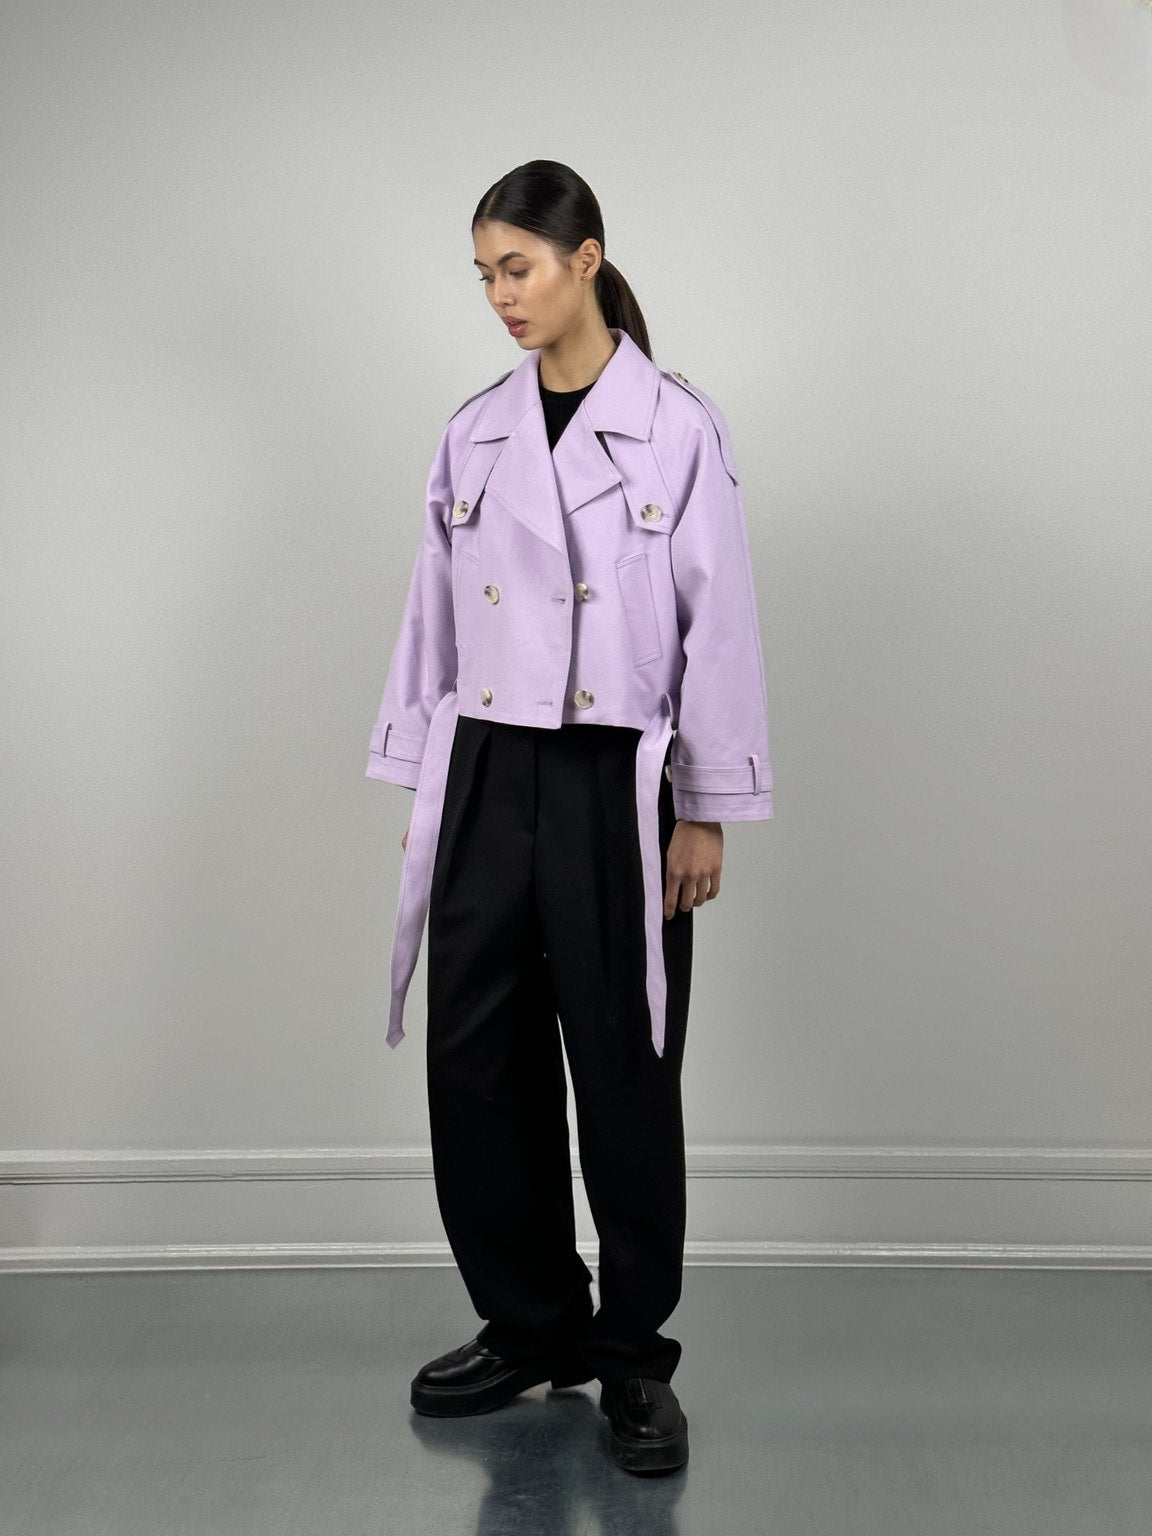 Purple Jean Jacket